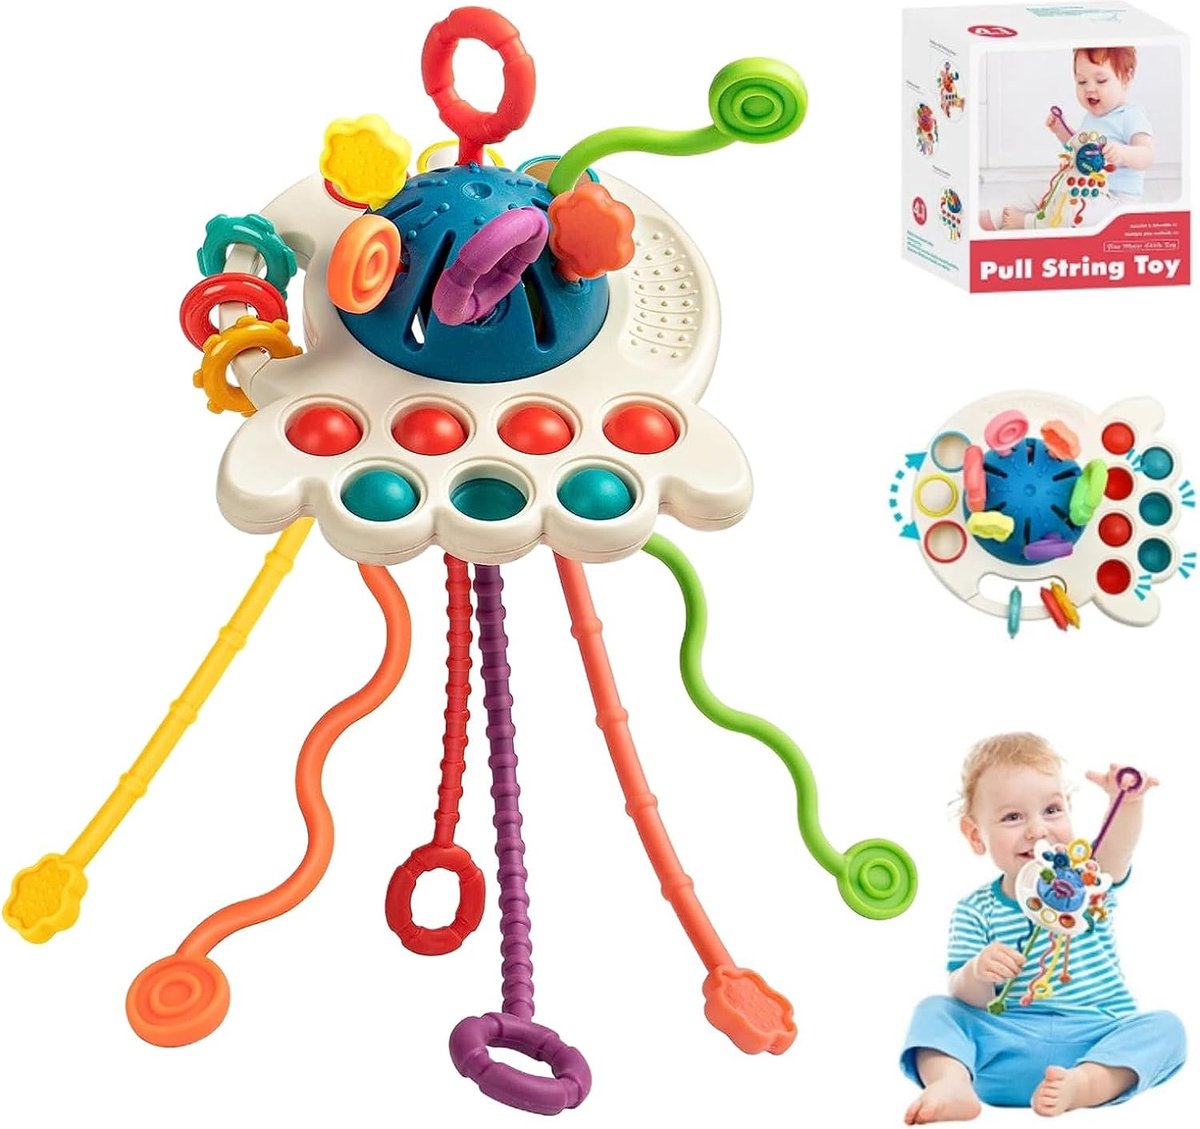 Motricité fine Hérisson - speelgoed Montessori pour la maison - Jouets Bébé 1  an fille